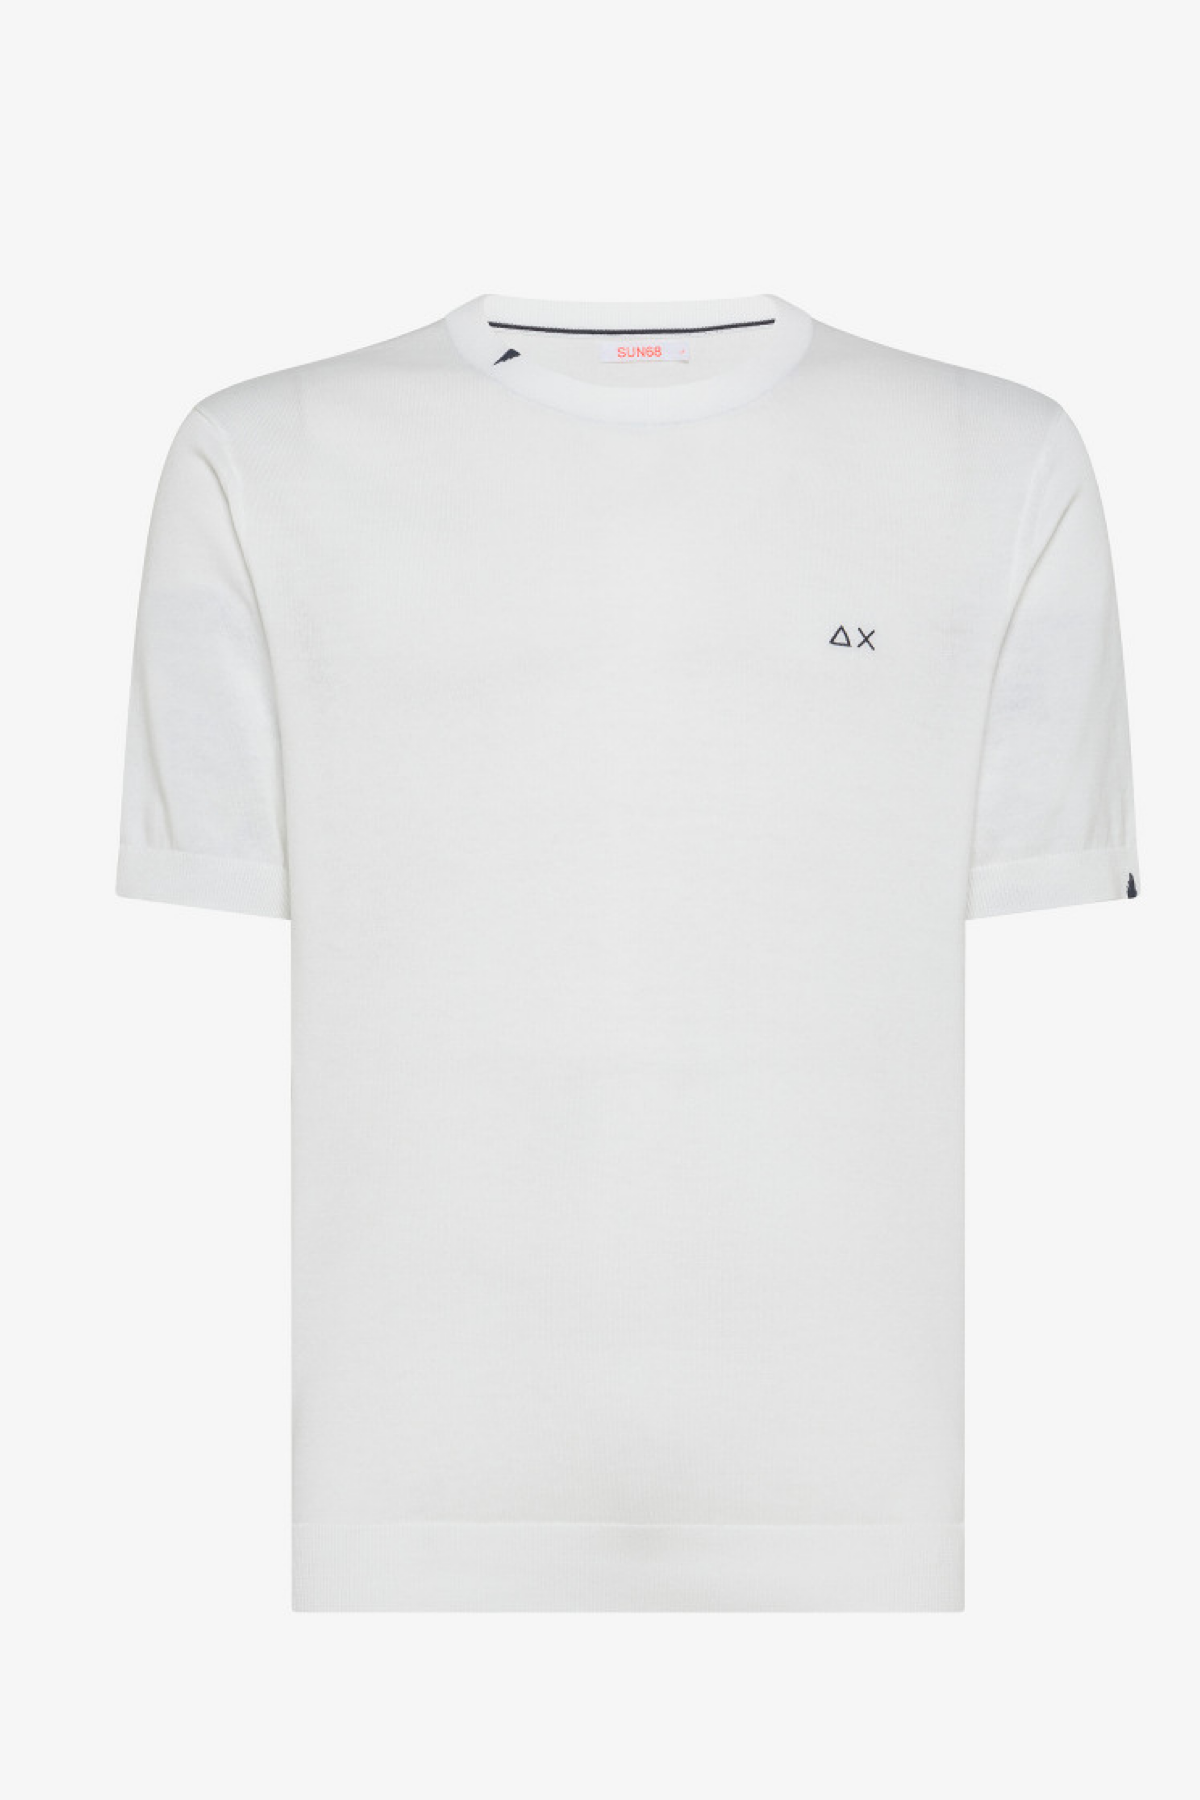 Sun68 t-shirt solid K34106 bianco